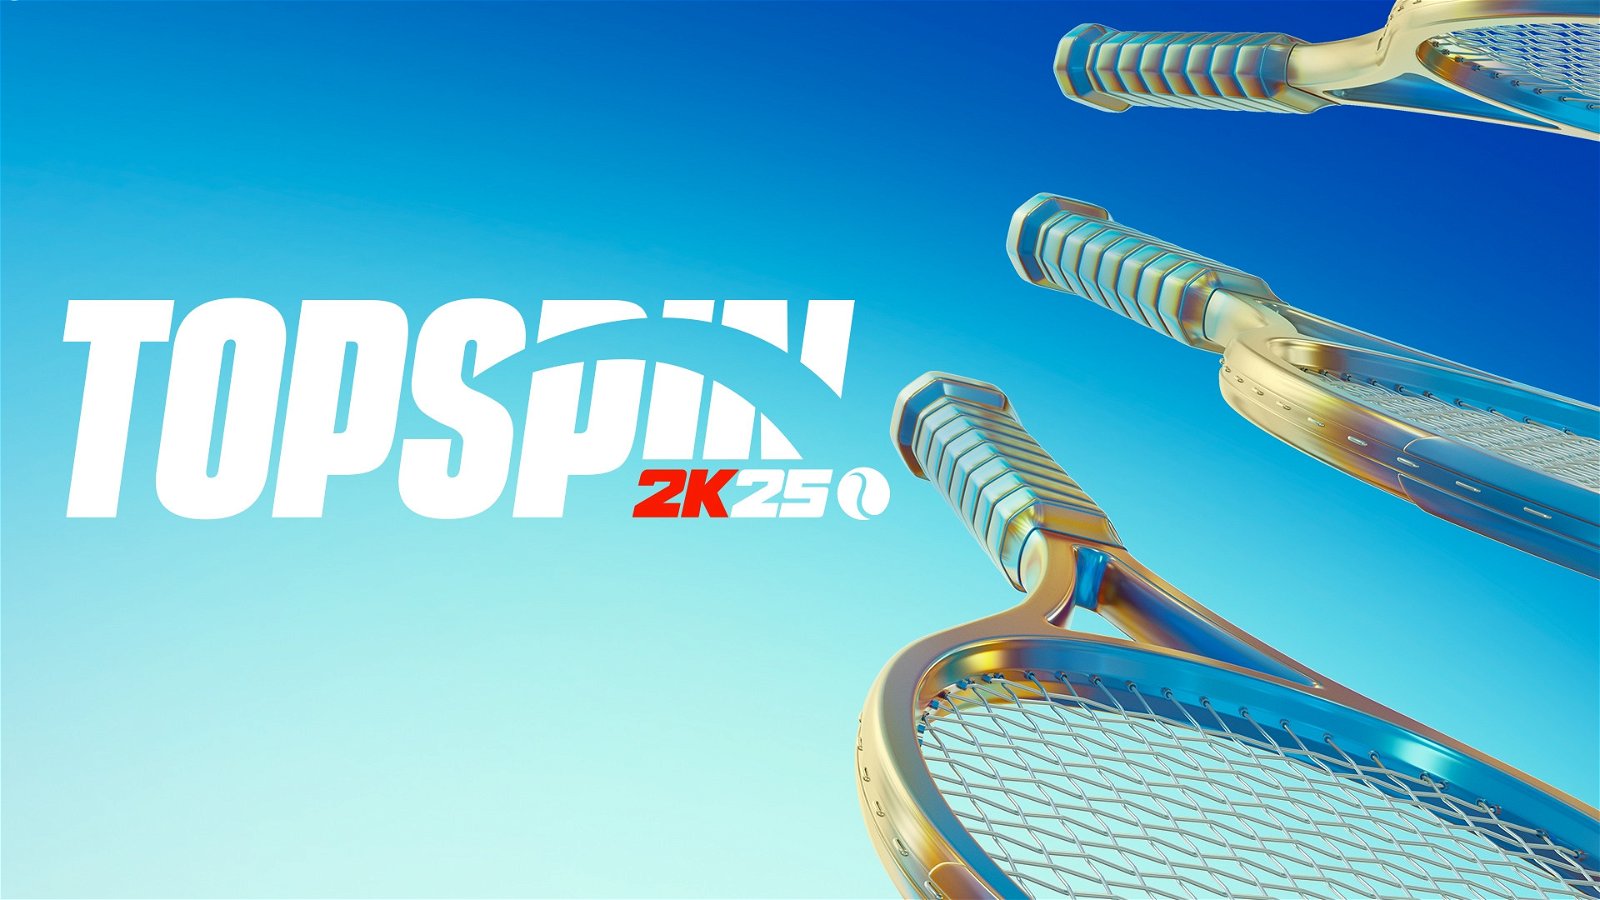 TopSpin 2K25 dice no al più forte tennista italiano